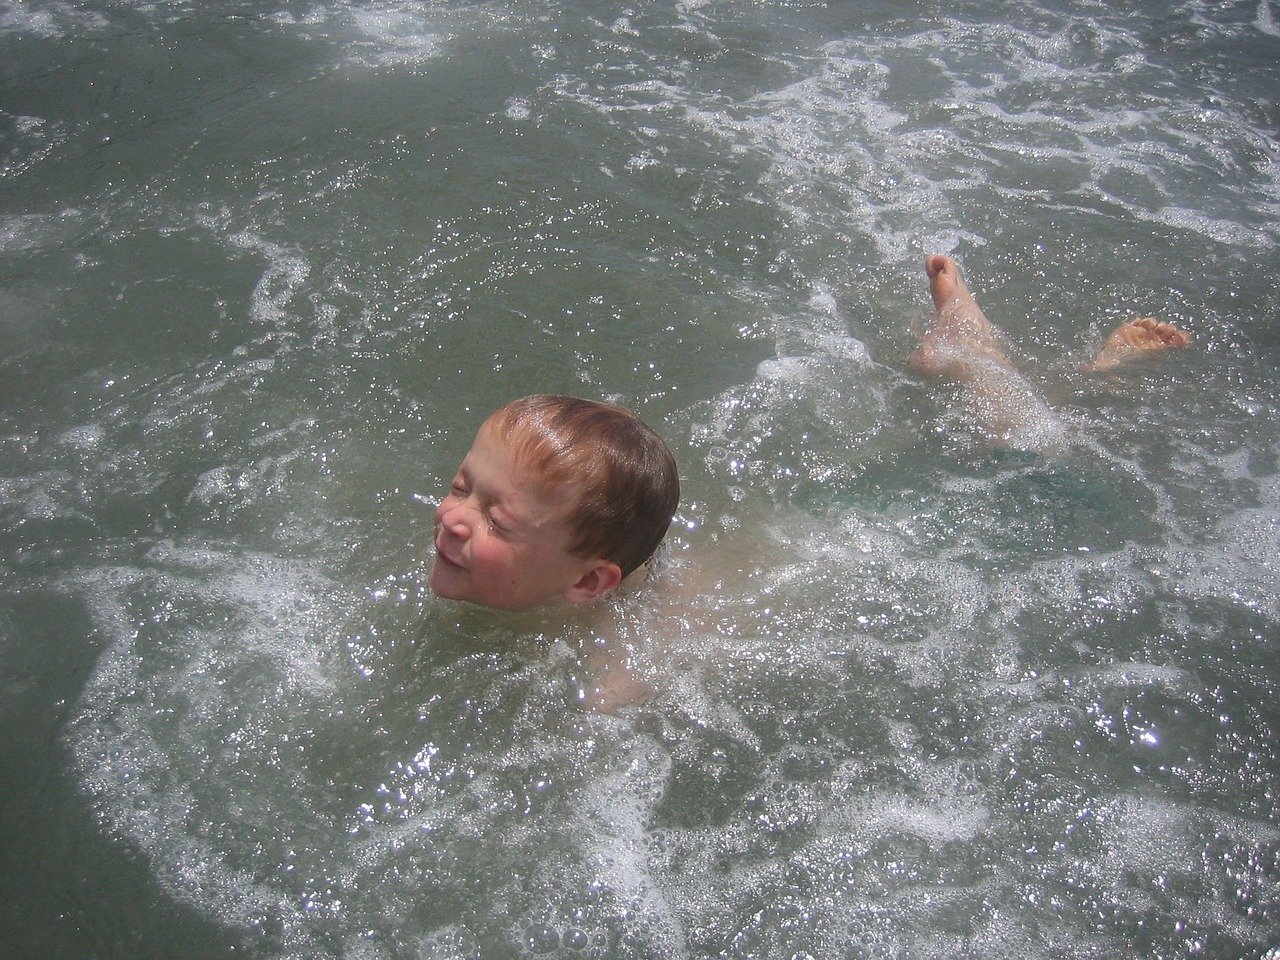 Un enfant nageant dans l'eau | Photo : Pixabay